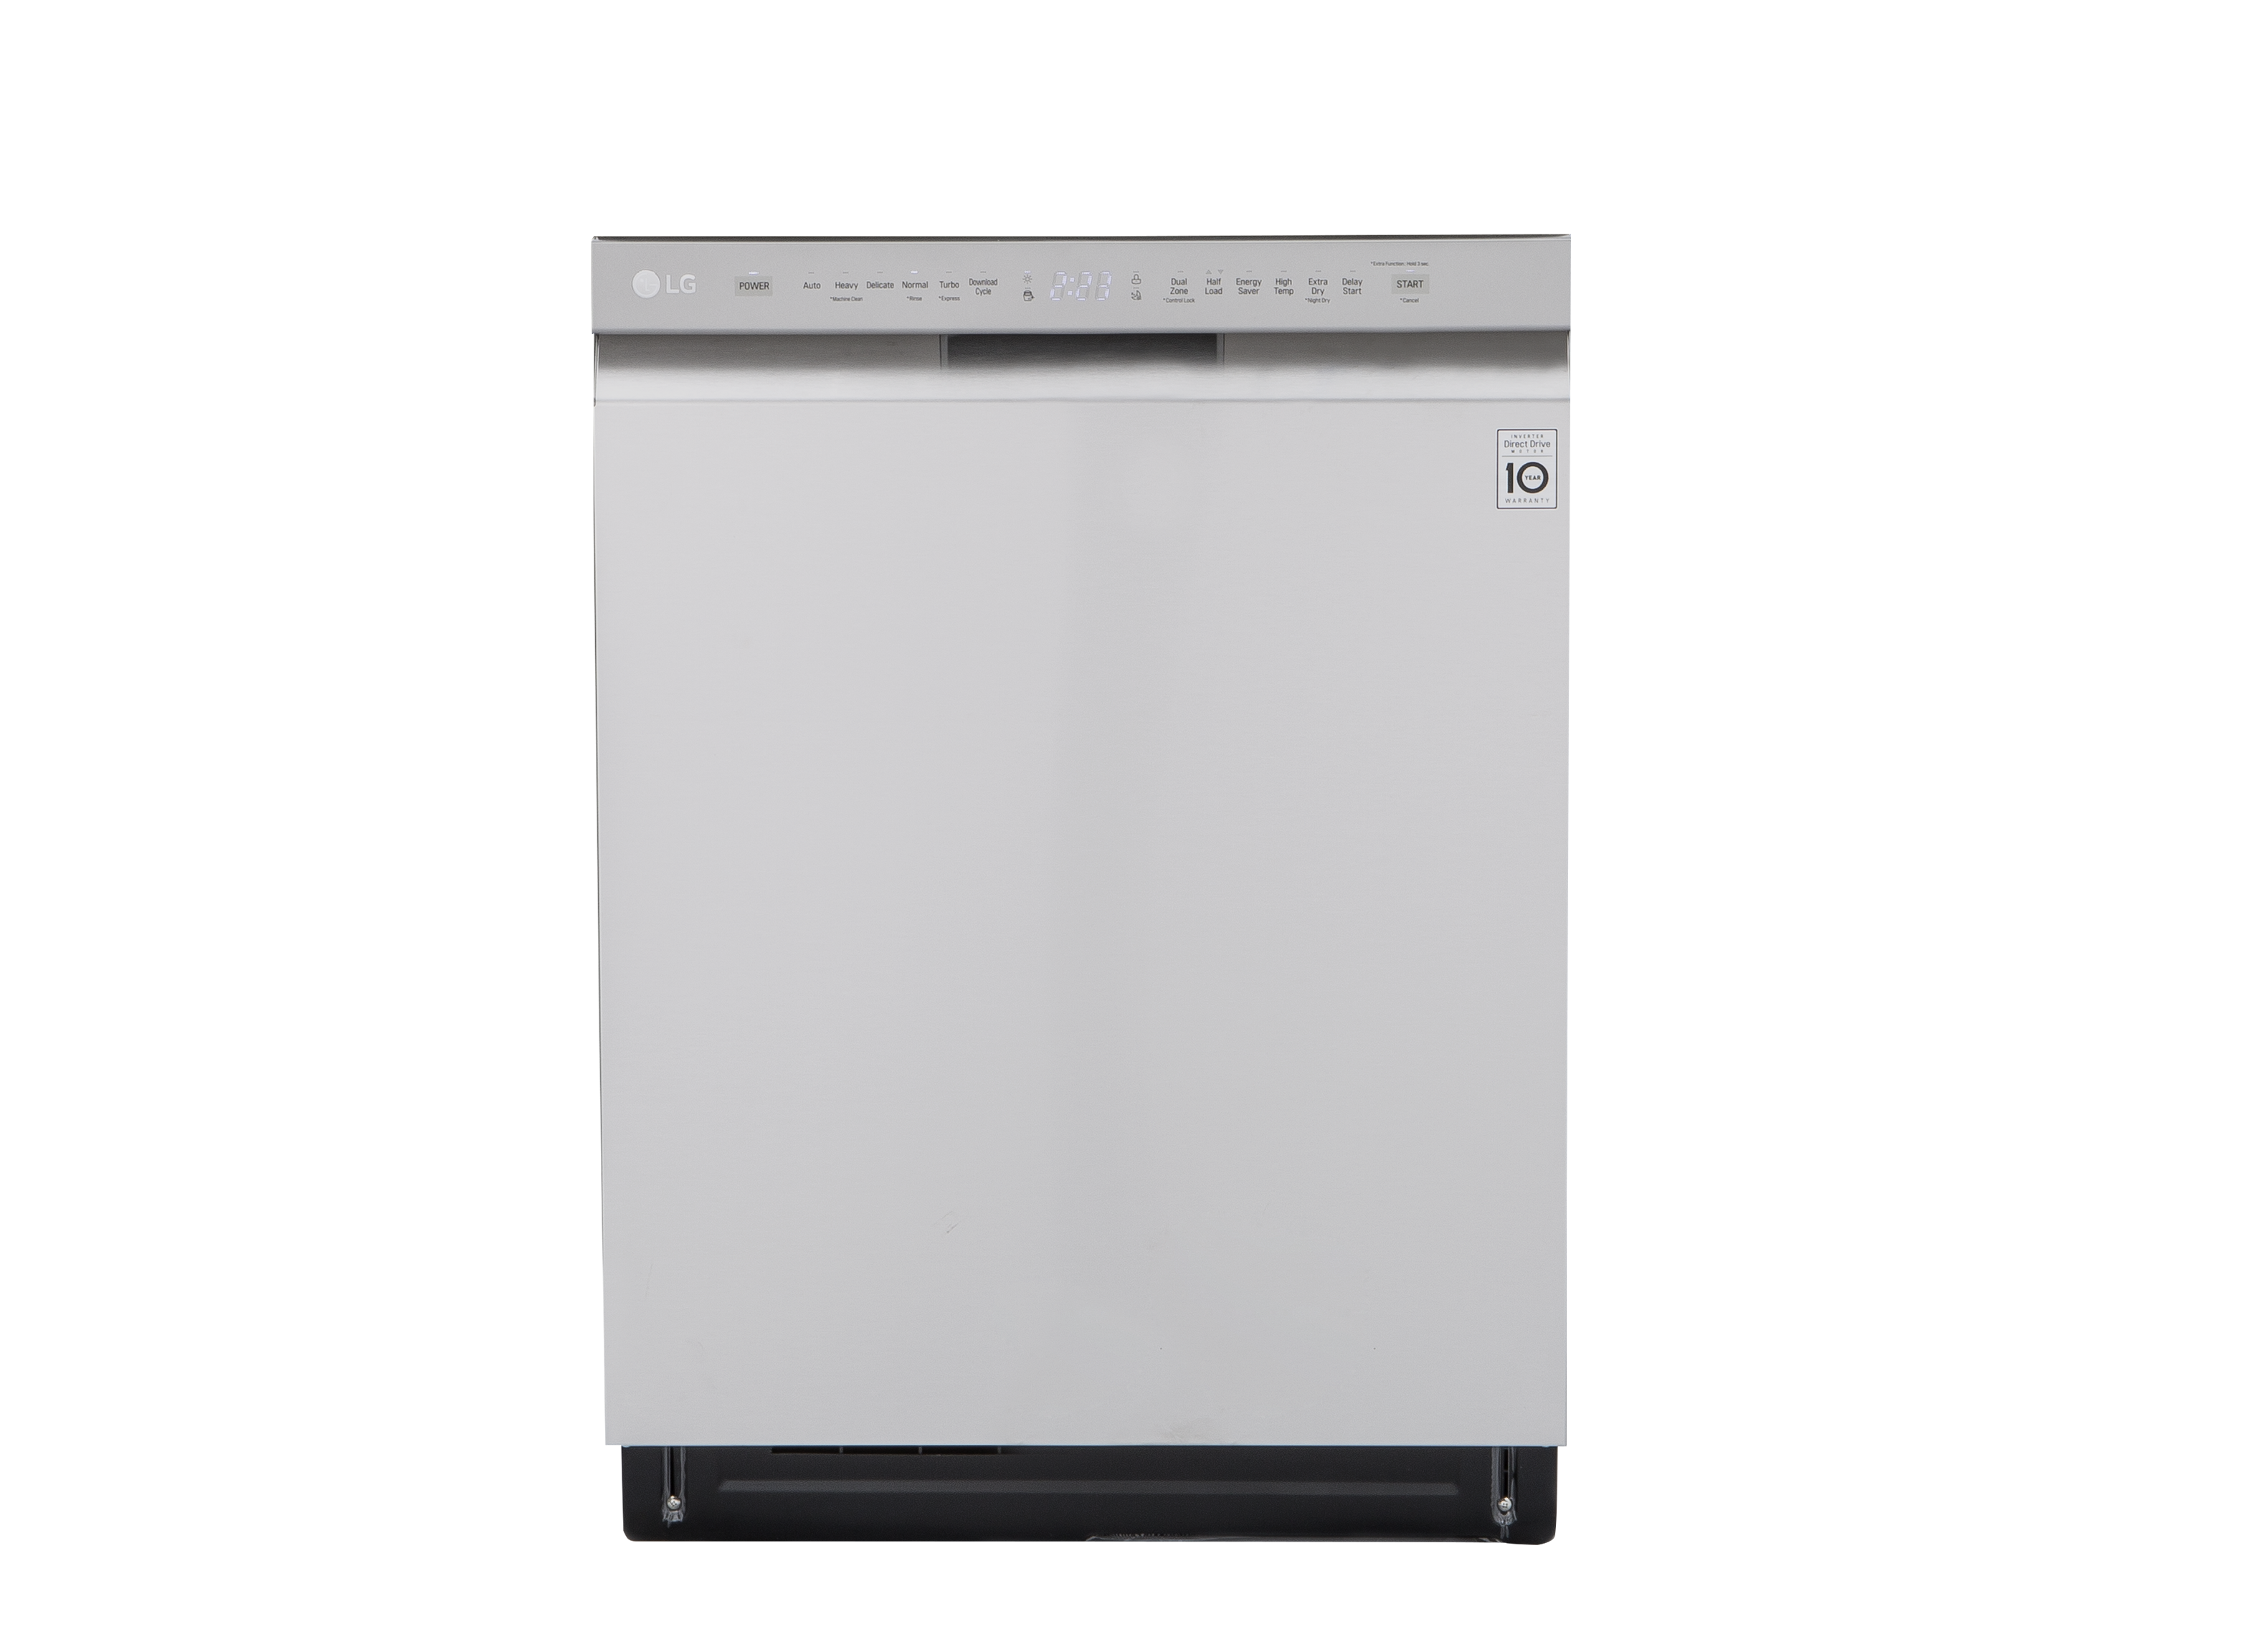 St Takozvani Općenito govoreći  LG LDF5545ST Dishwasher - Consumer Reports